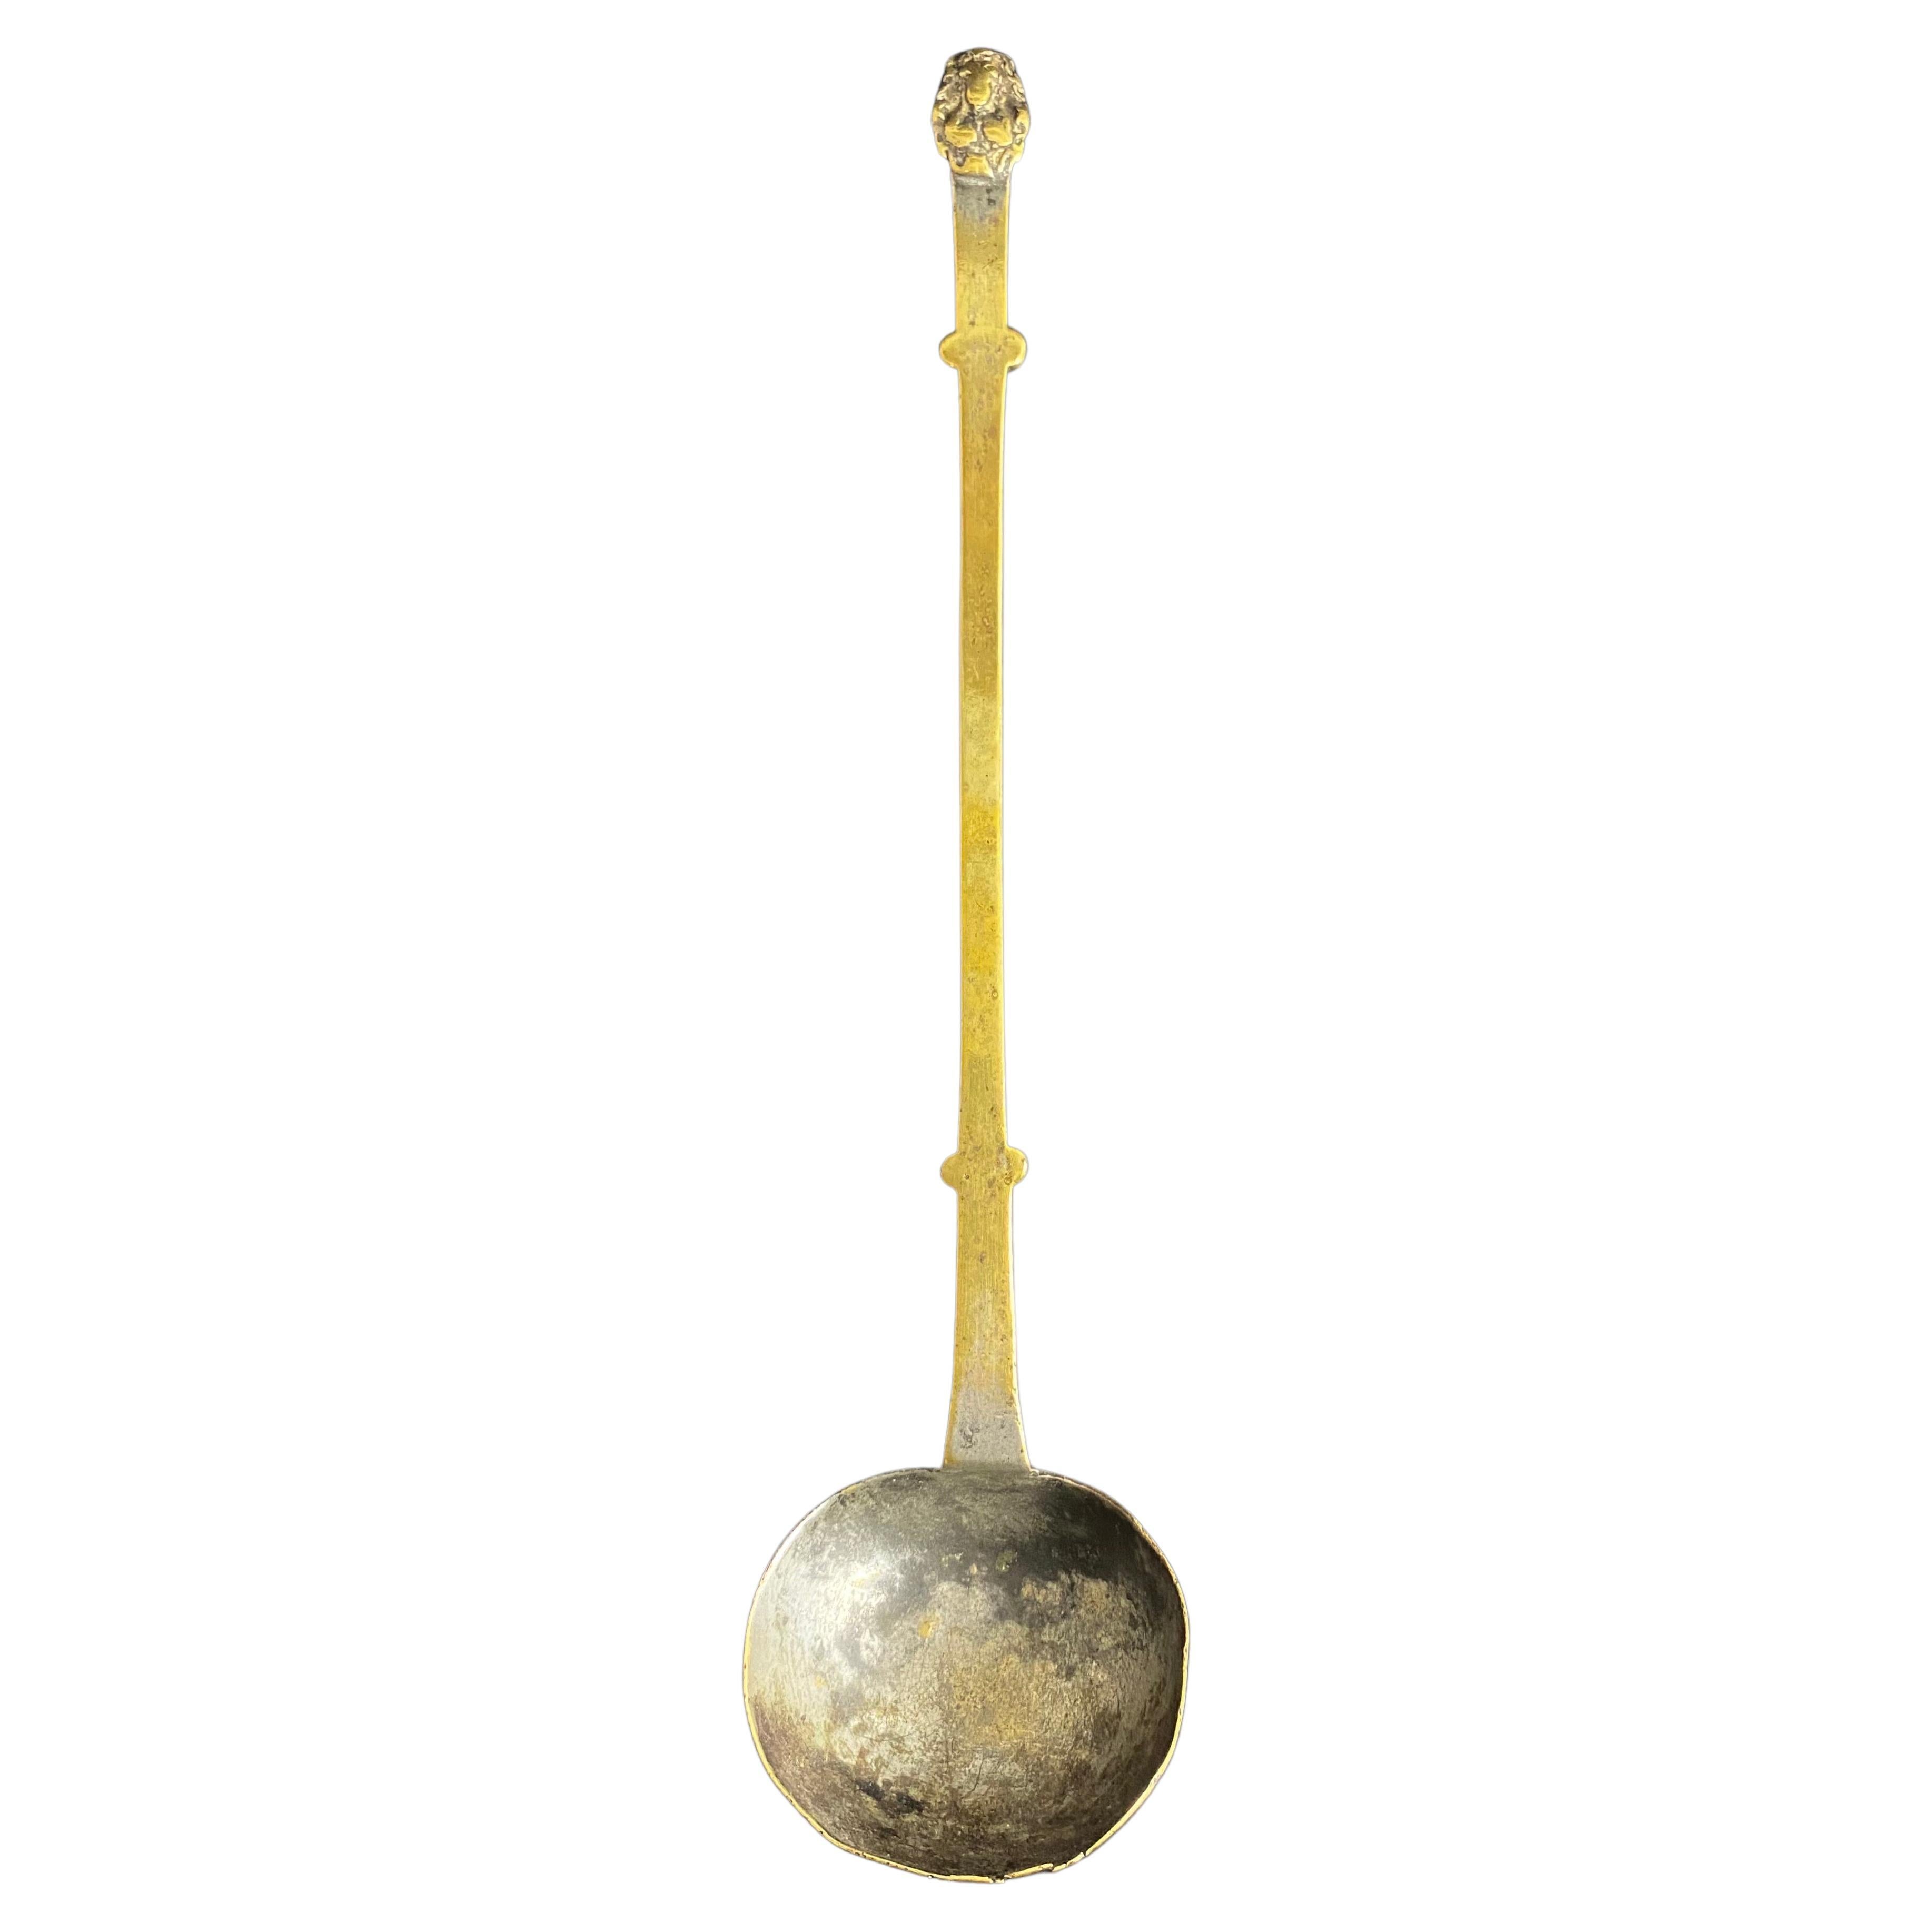 Haute Epoque bronze ladle - 17th century - France For Sale